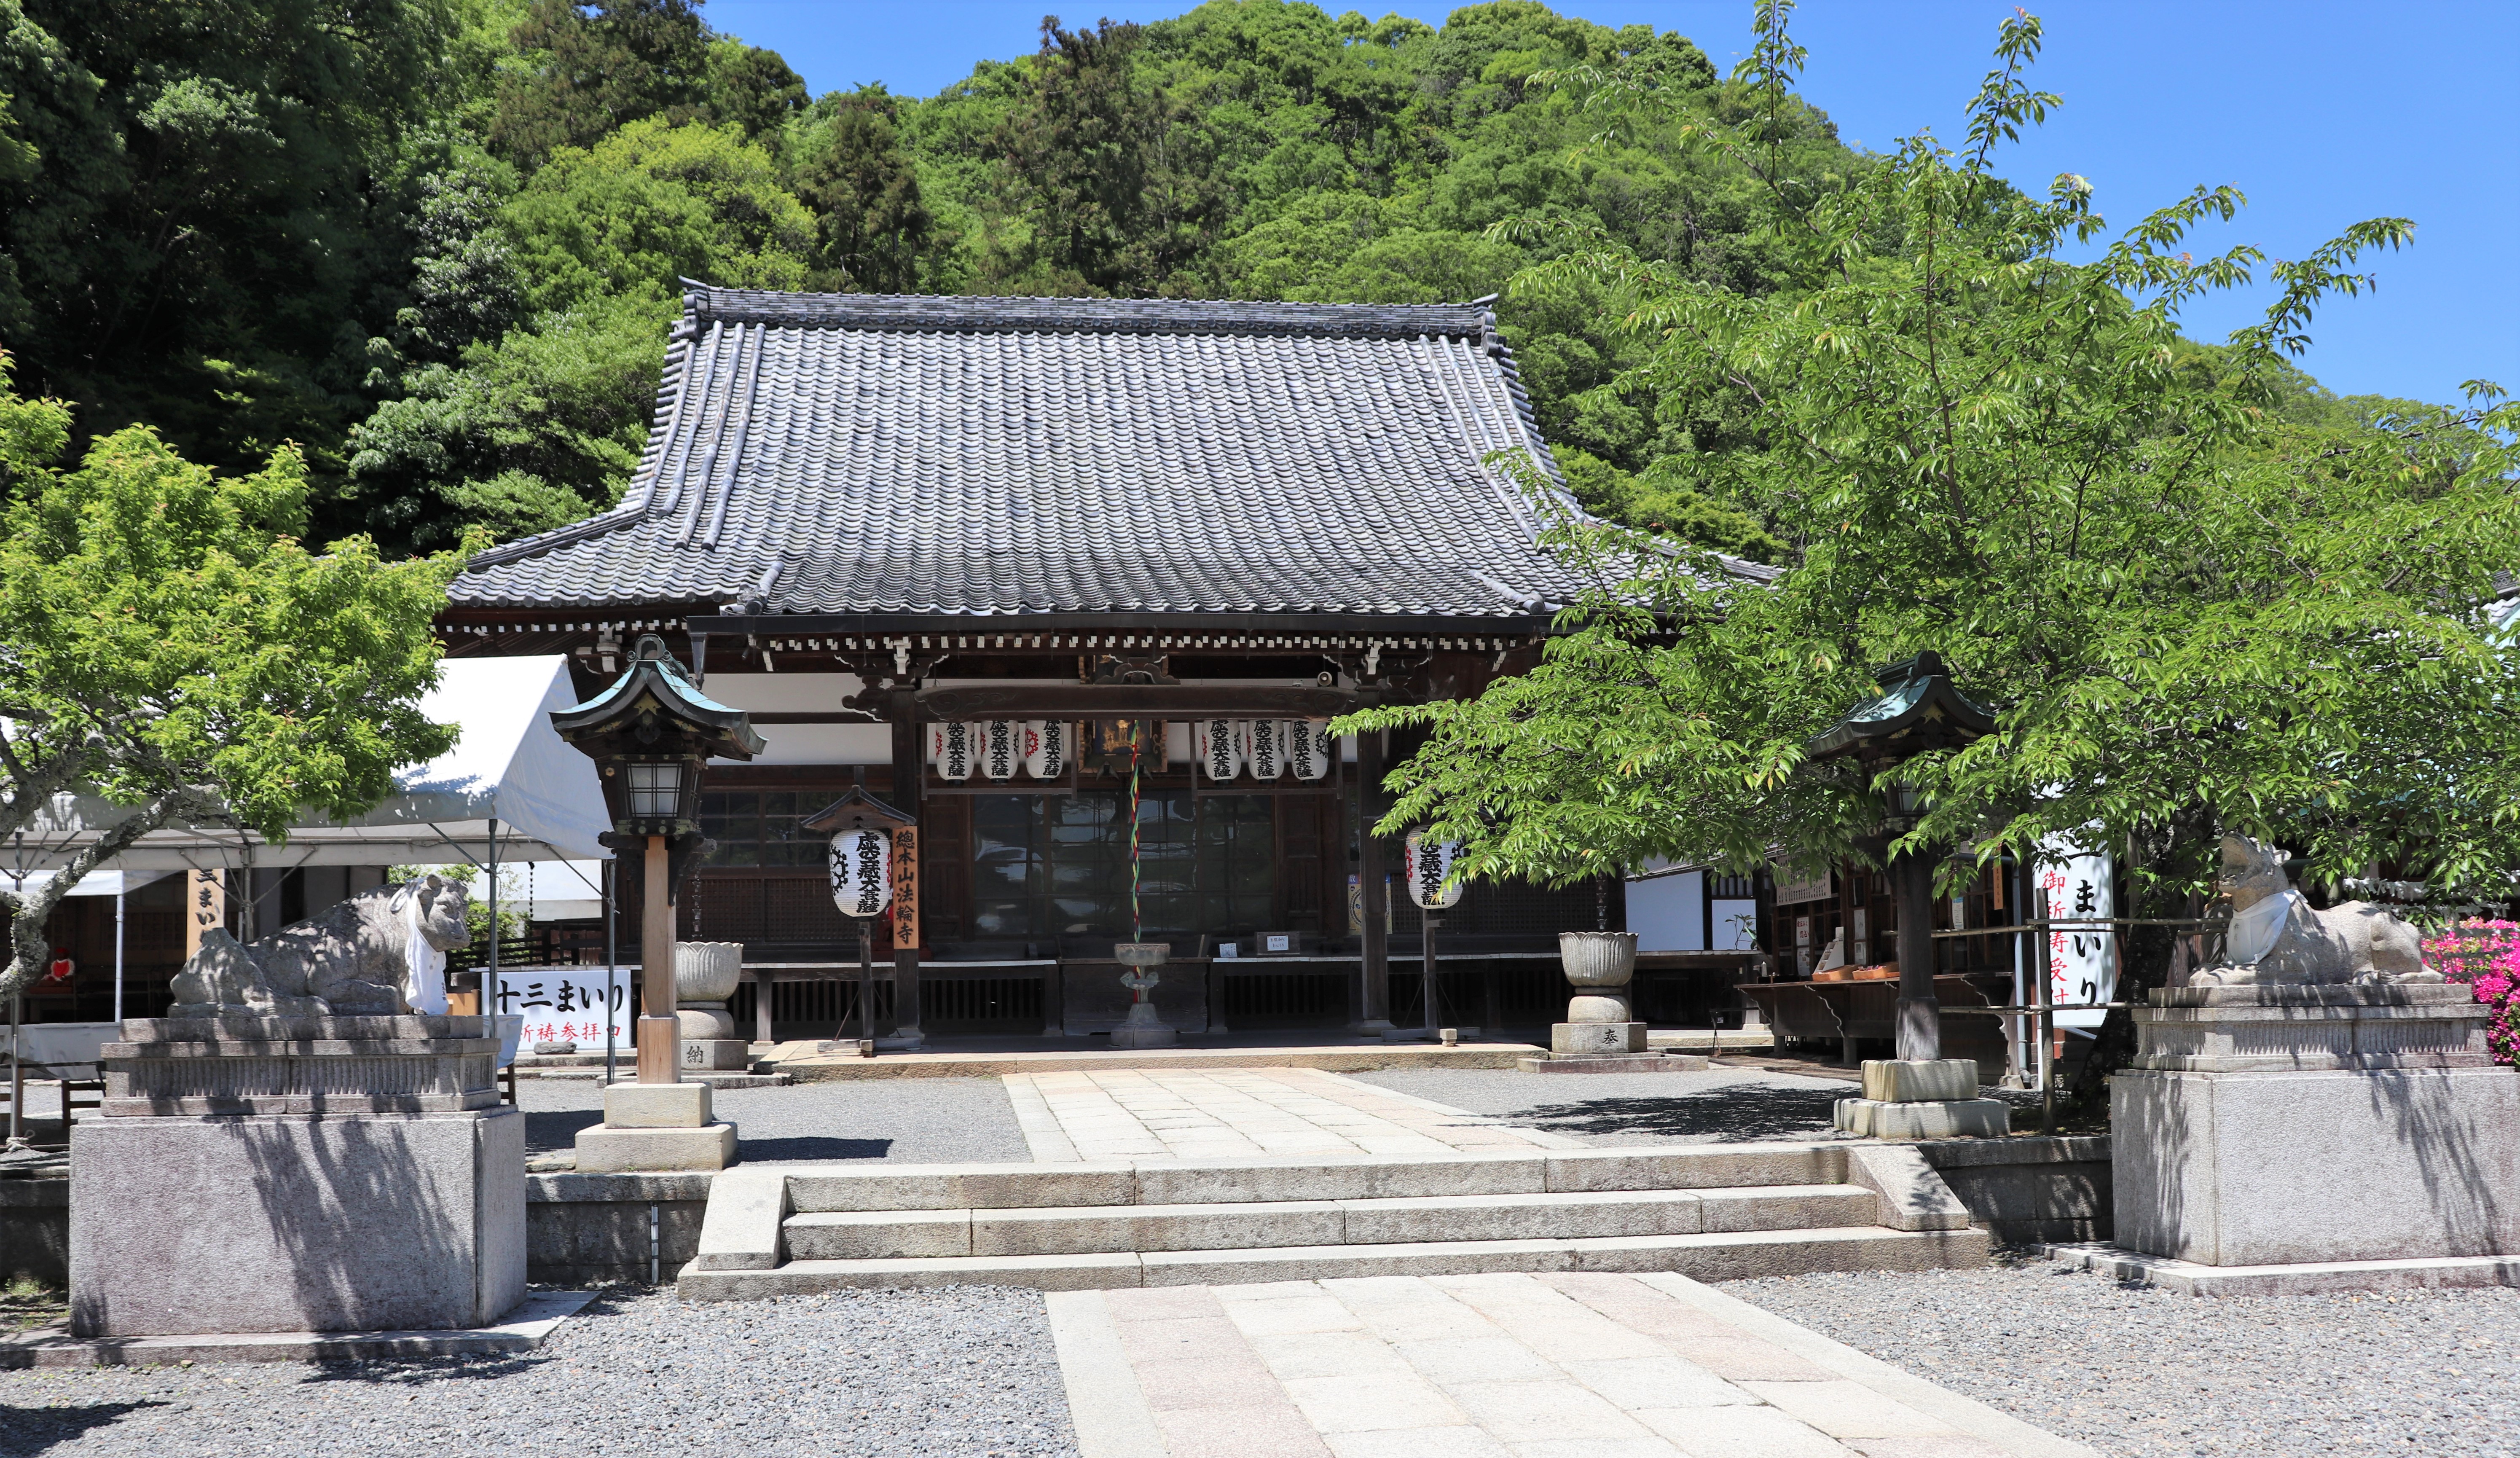 Main prayer hall of Horin-ji Temple in Arashiyama